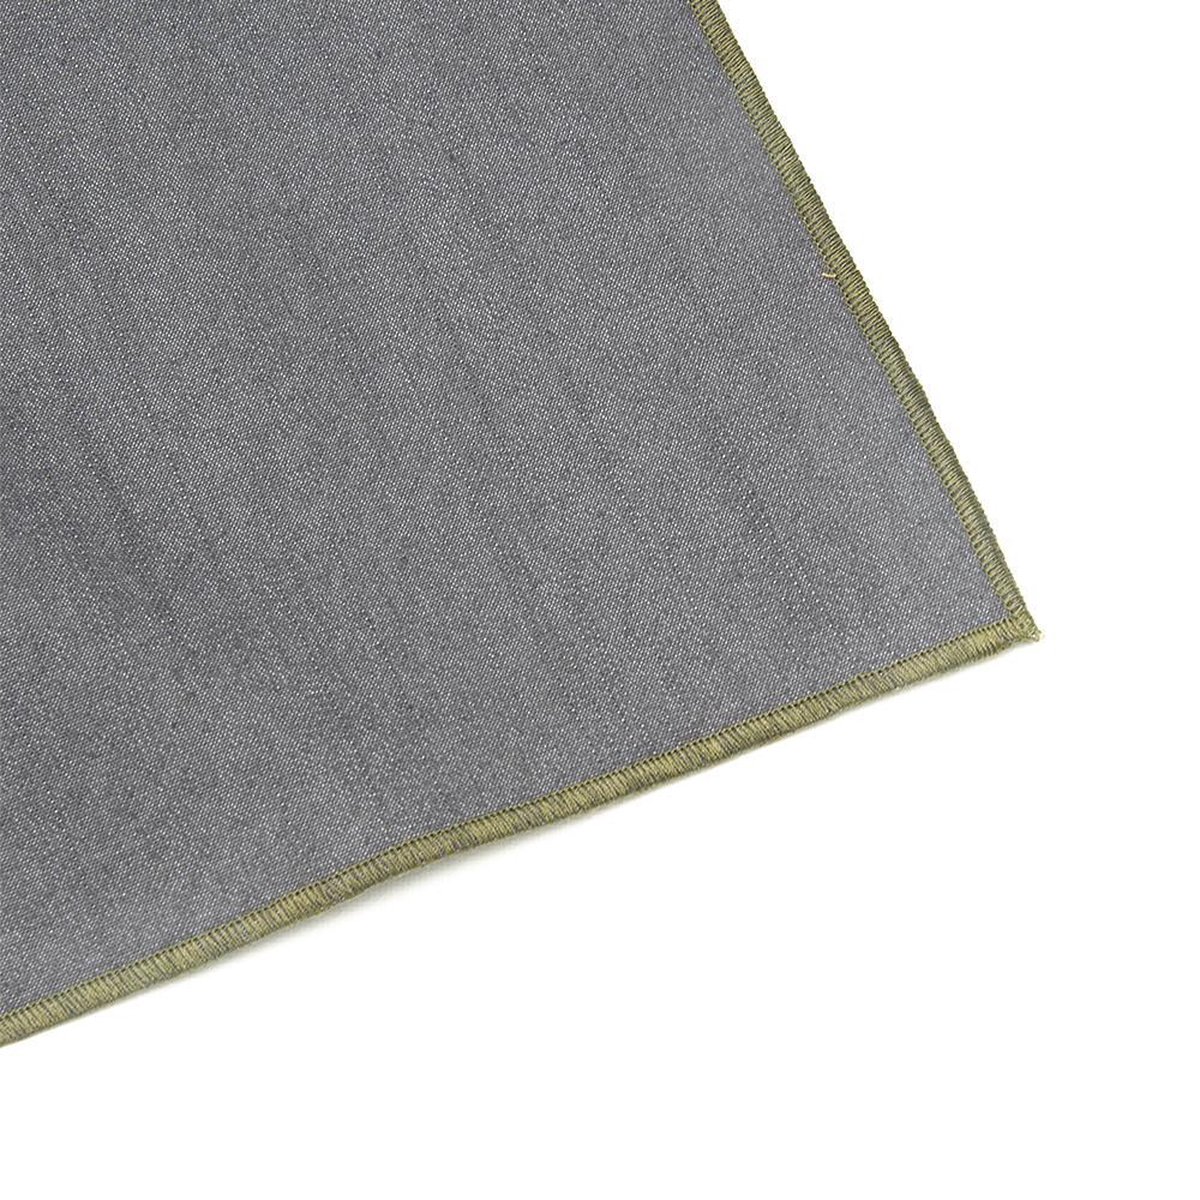 Denim grijs tafelkleed - met groene rand - Bliek Tof Tafelen - 140x350 cm